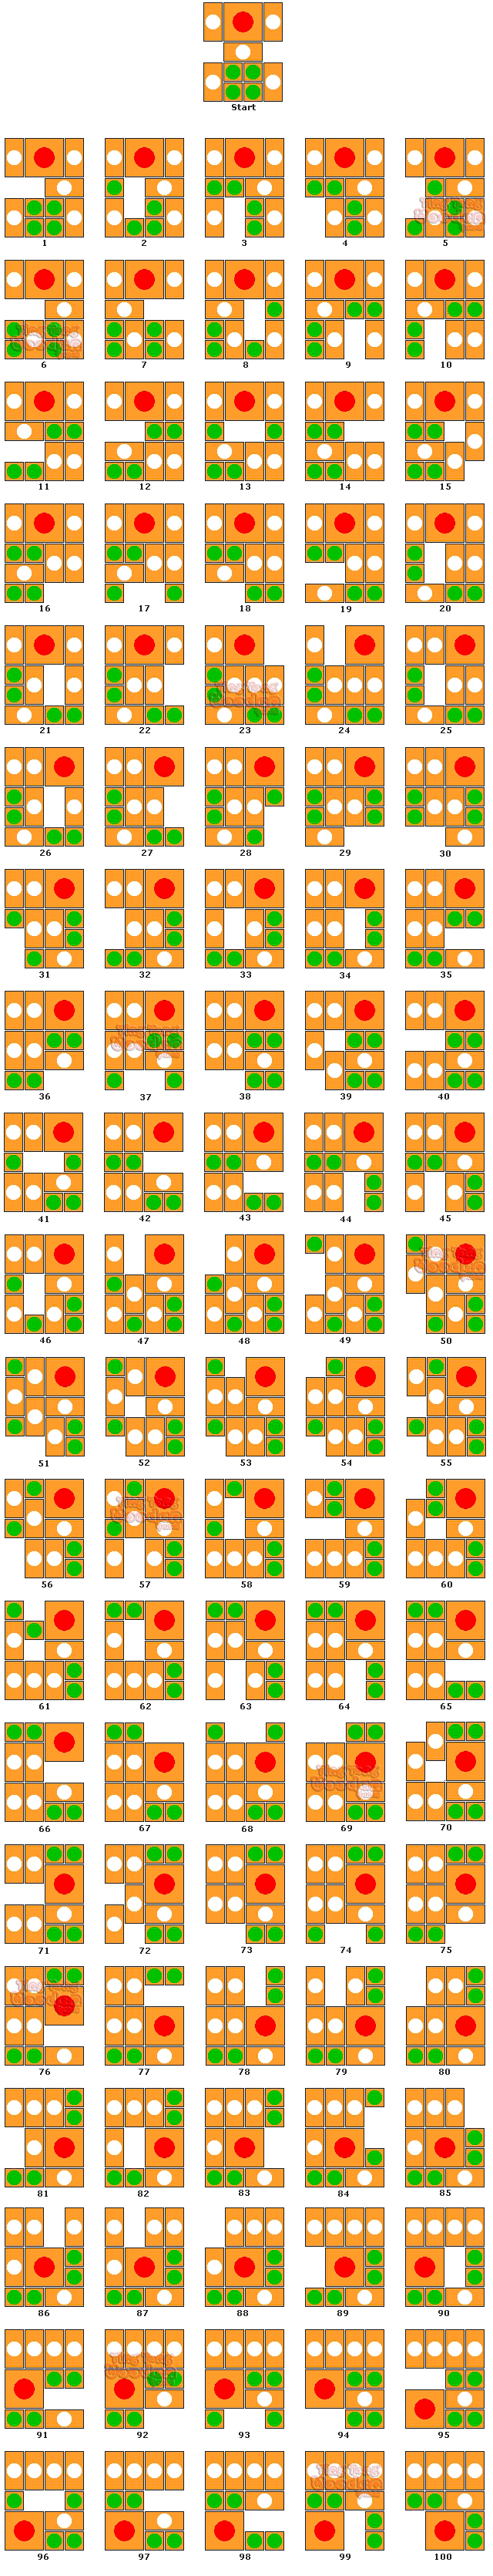 Khun Pan Auflösung der 100 Schritte, mit Anleitung des Escape Puzzles, aus der Startposition der Lösung der Verpackung